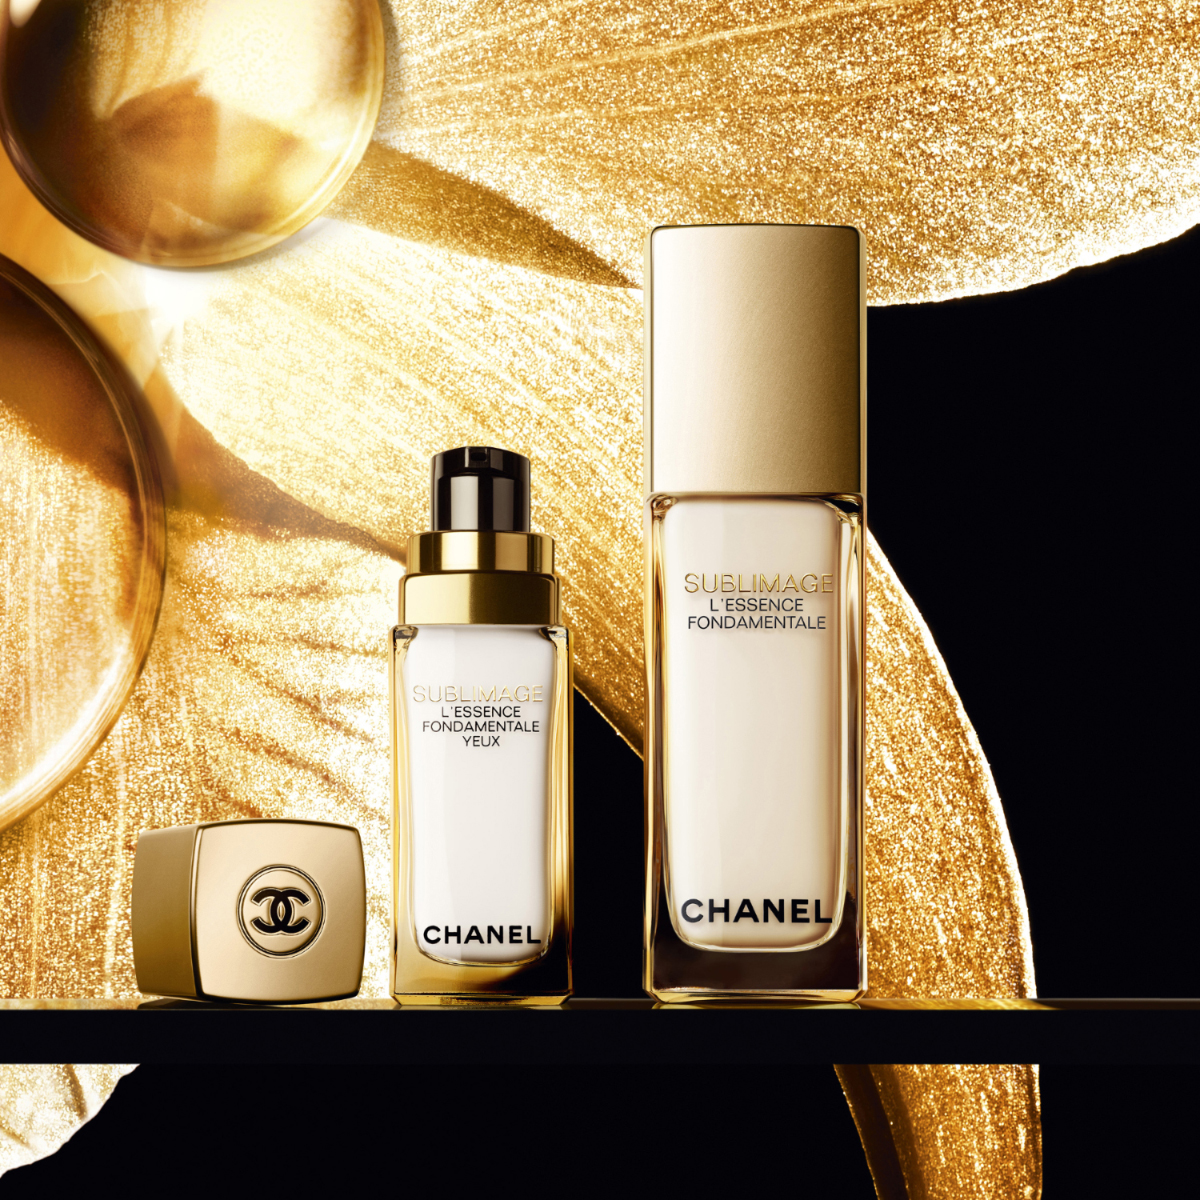 Chanel Sublimage / Guido Mocafico